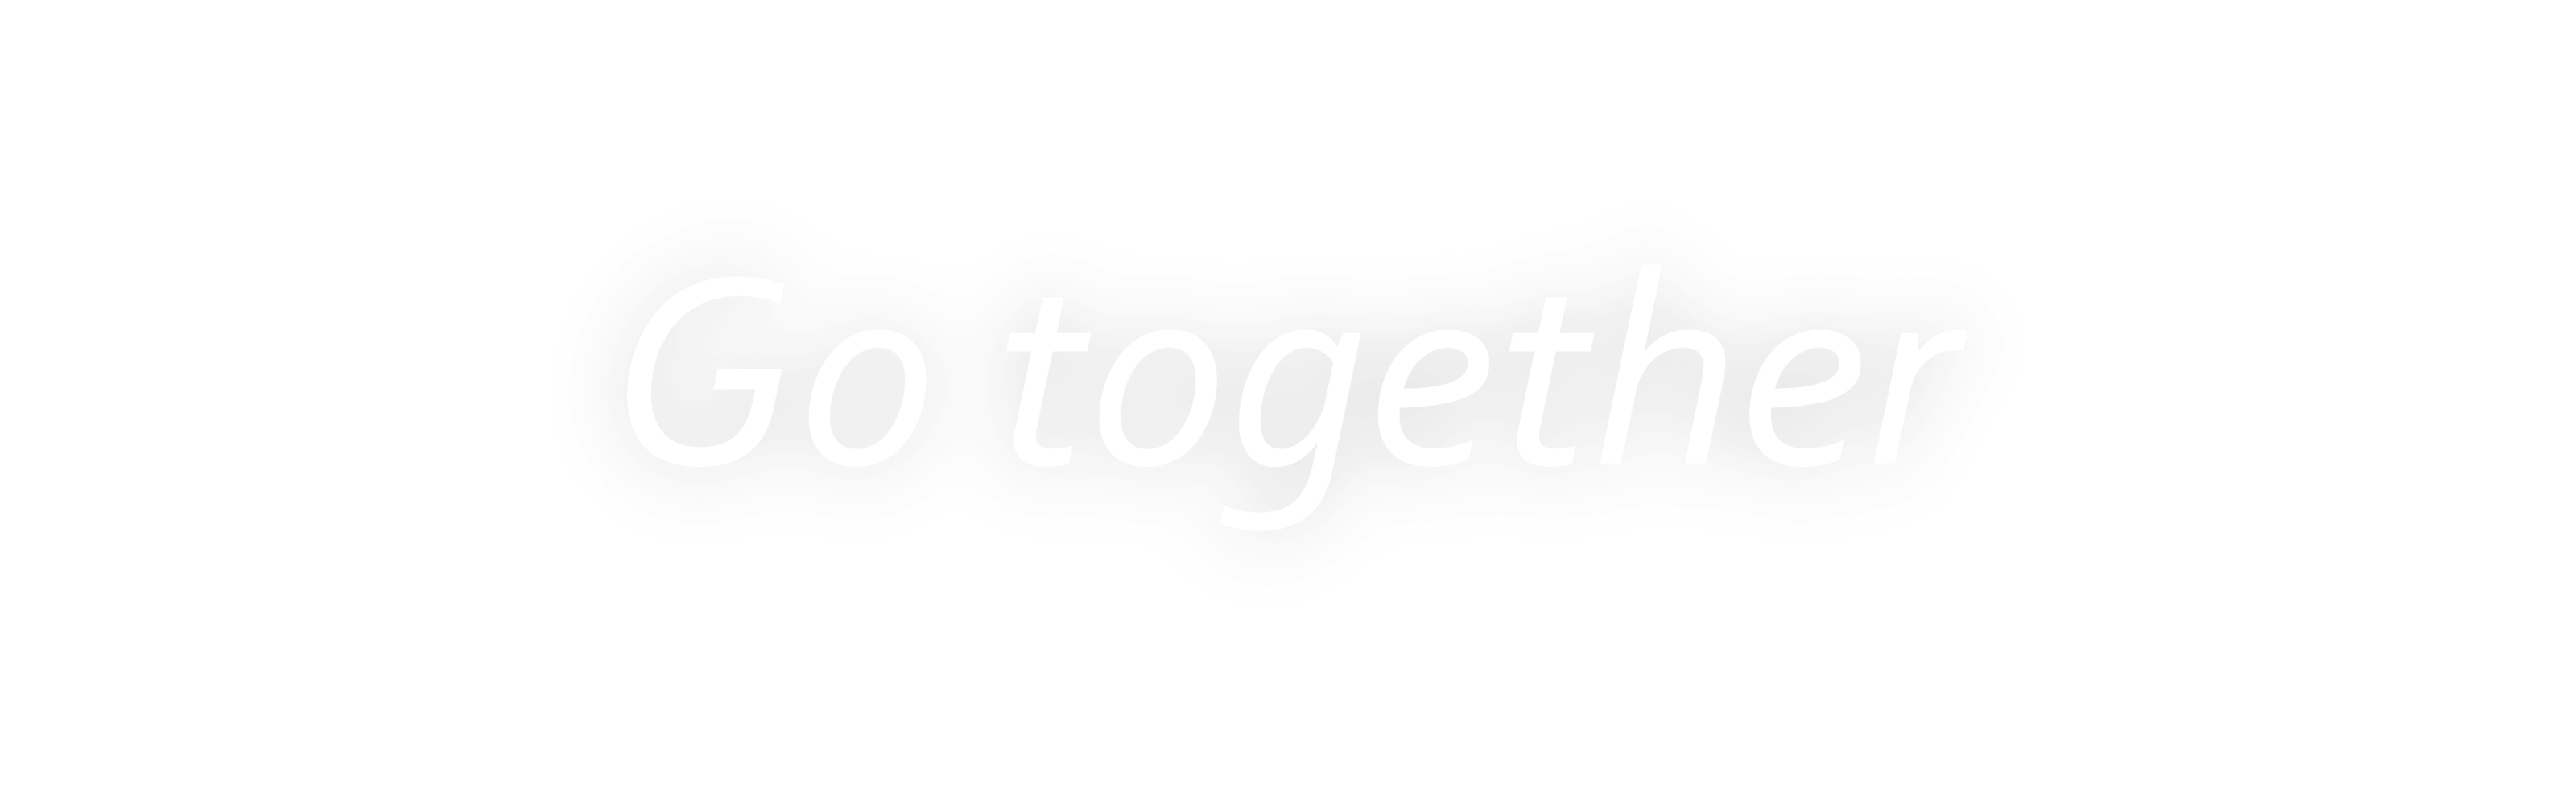 Go together